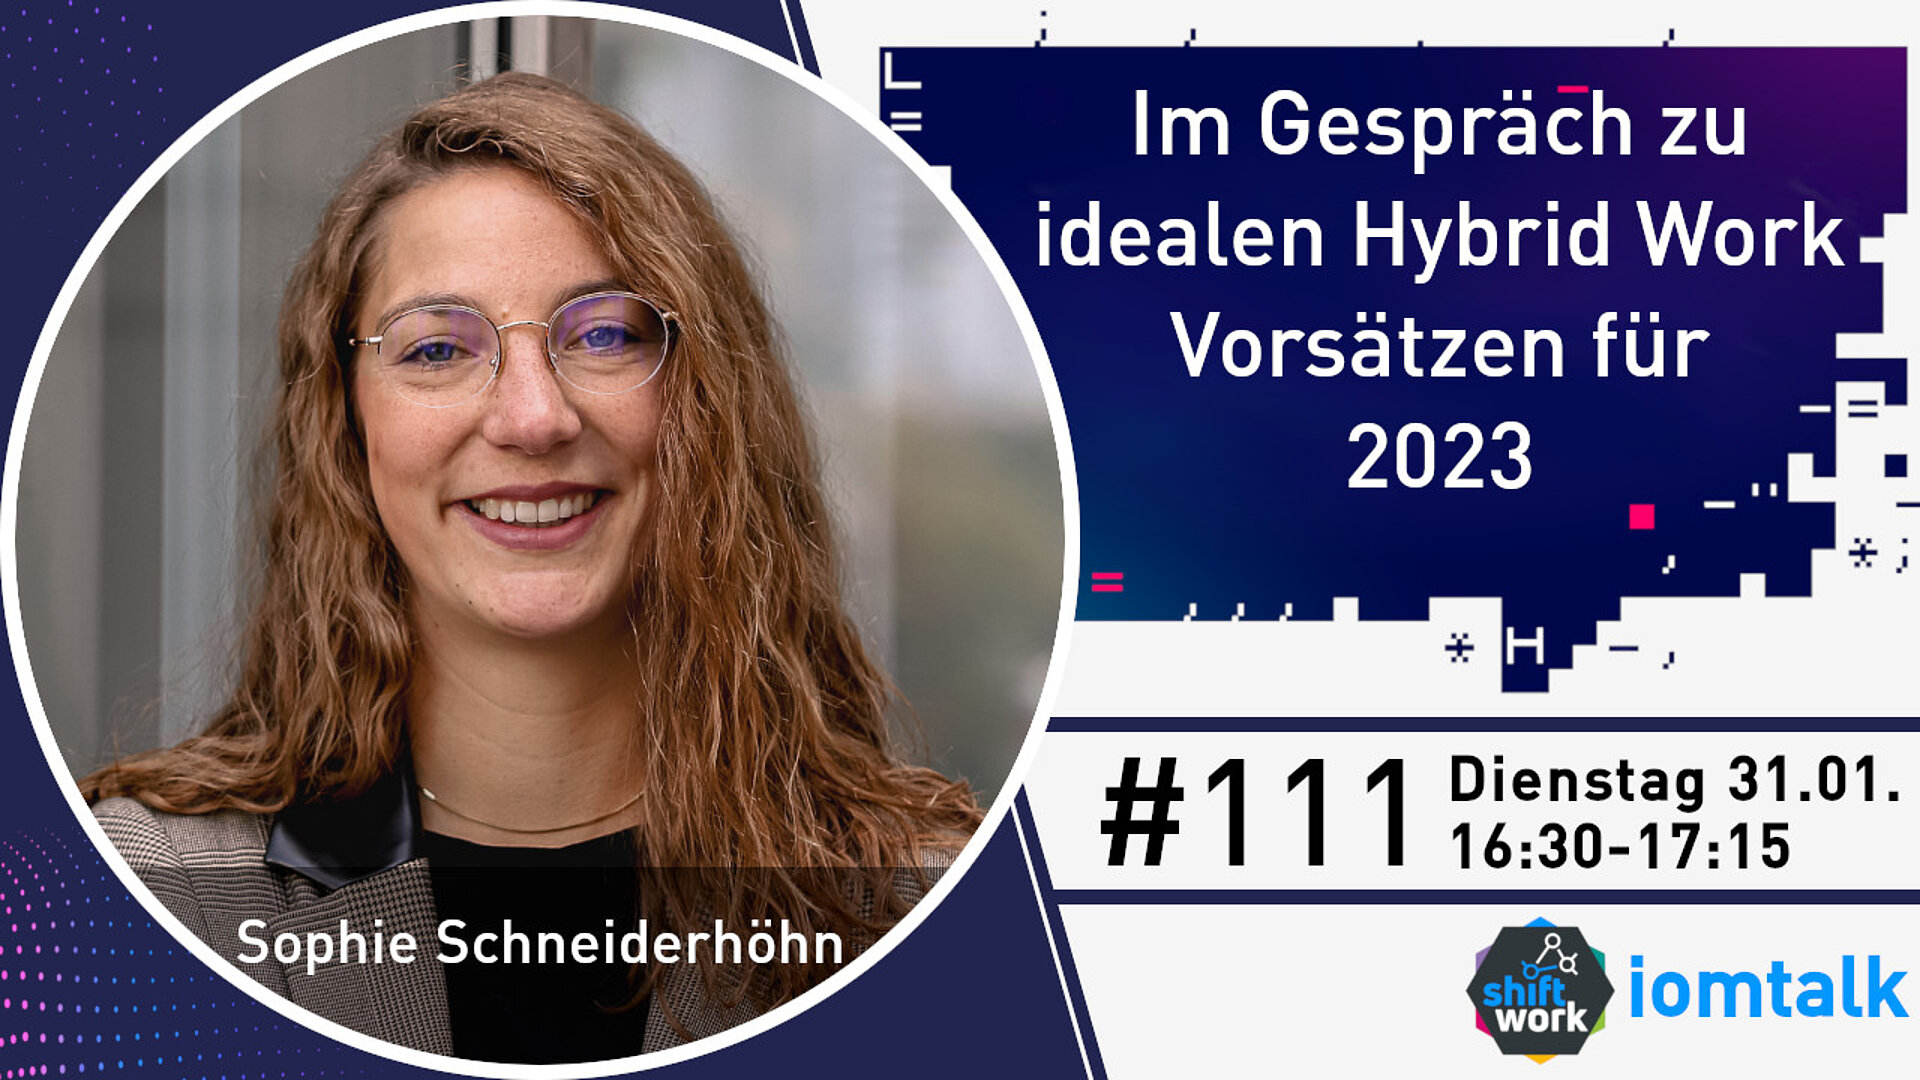 Im Gespräch mit Sophie Schneiderhöhn zu idealen Hybrid Work Vorsätzen für 2023